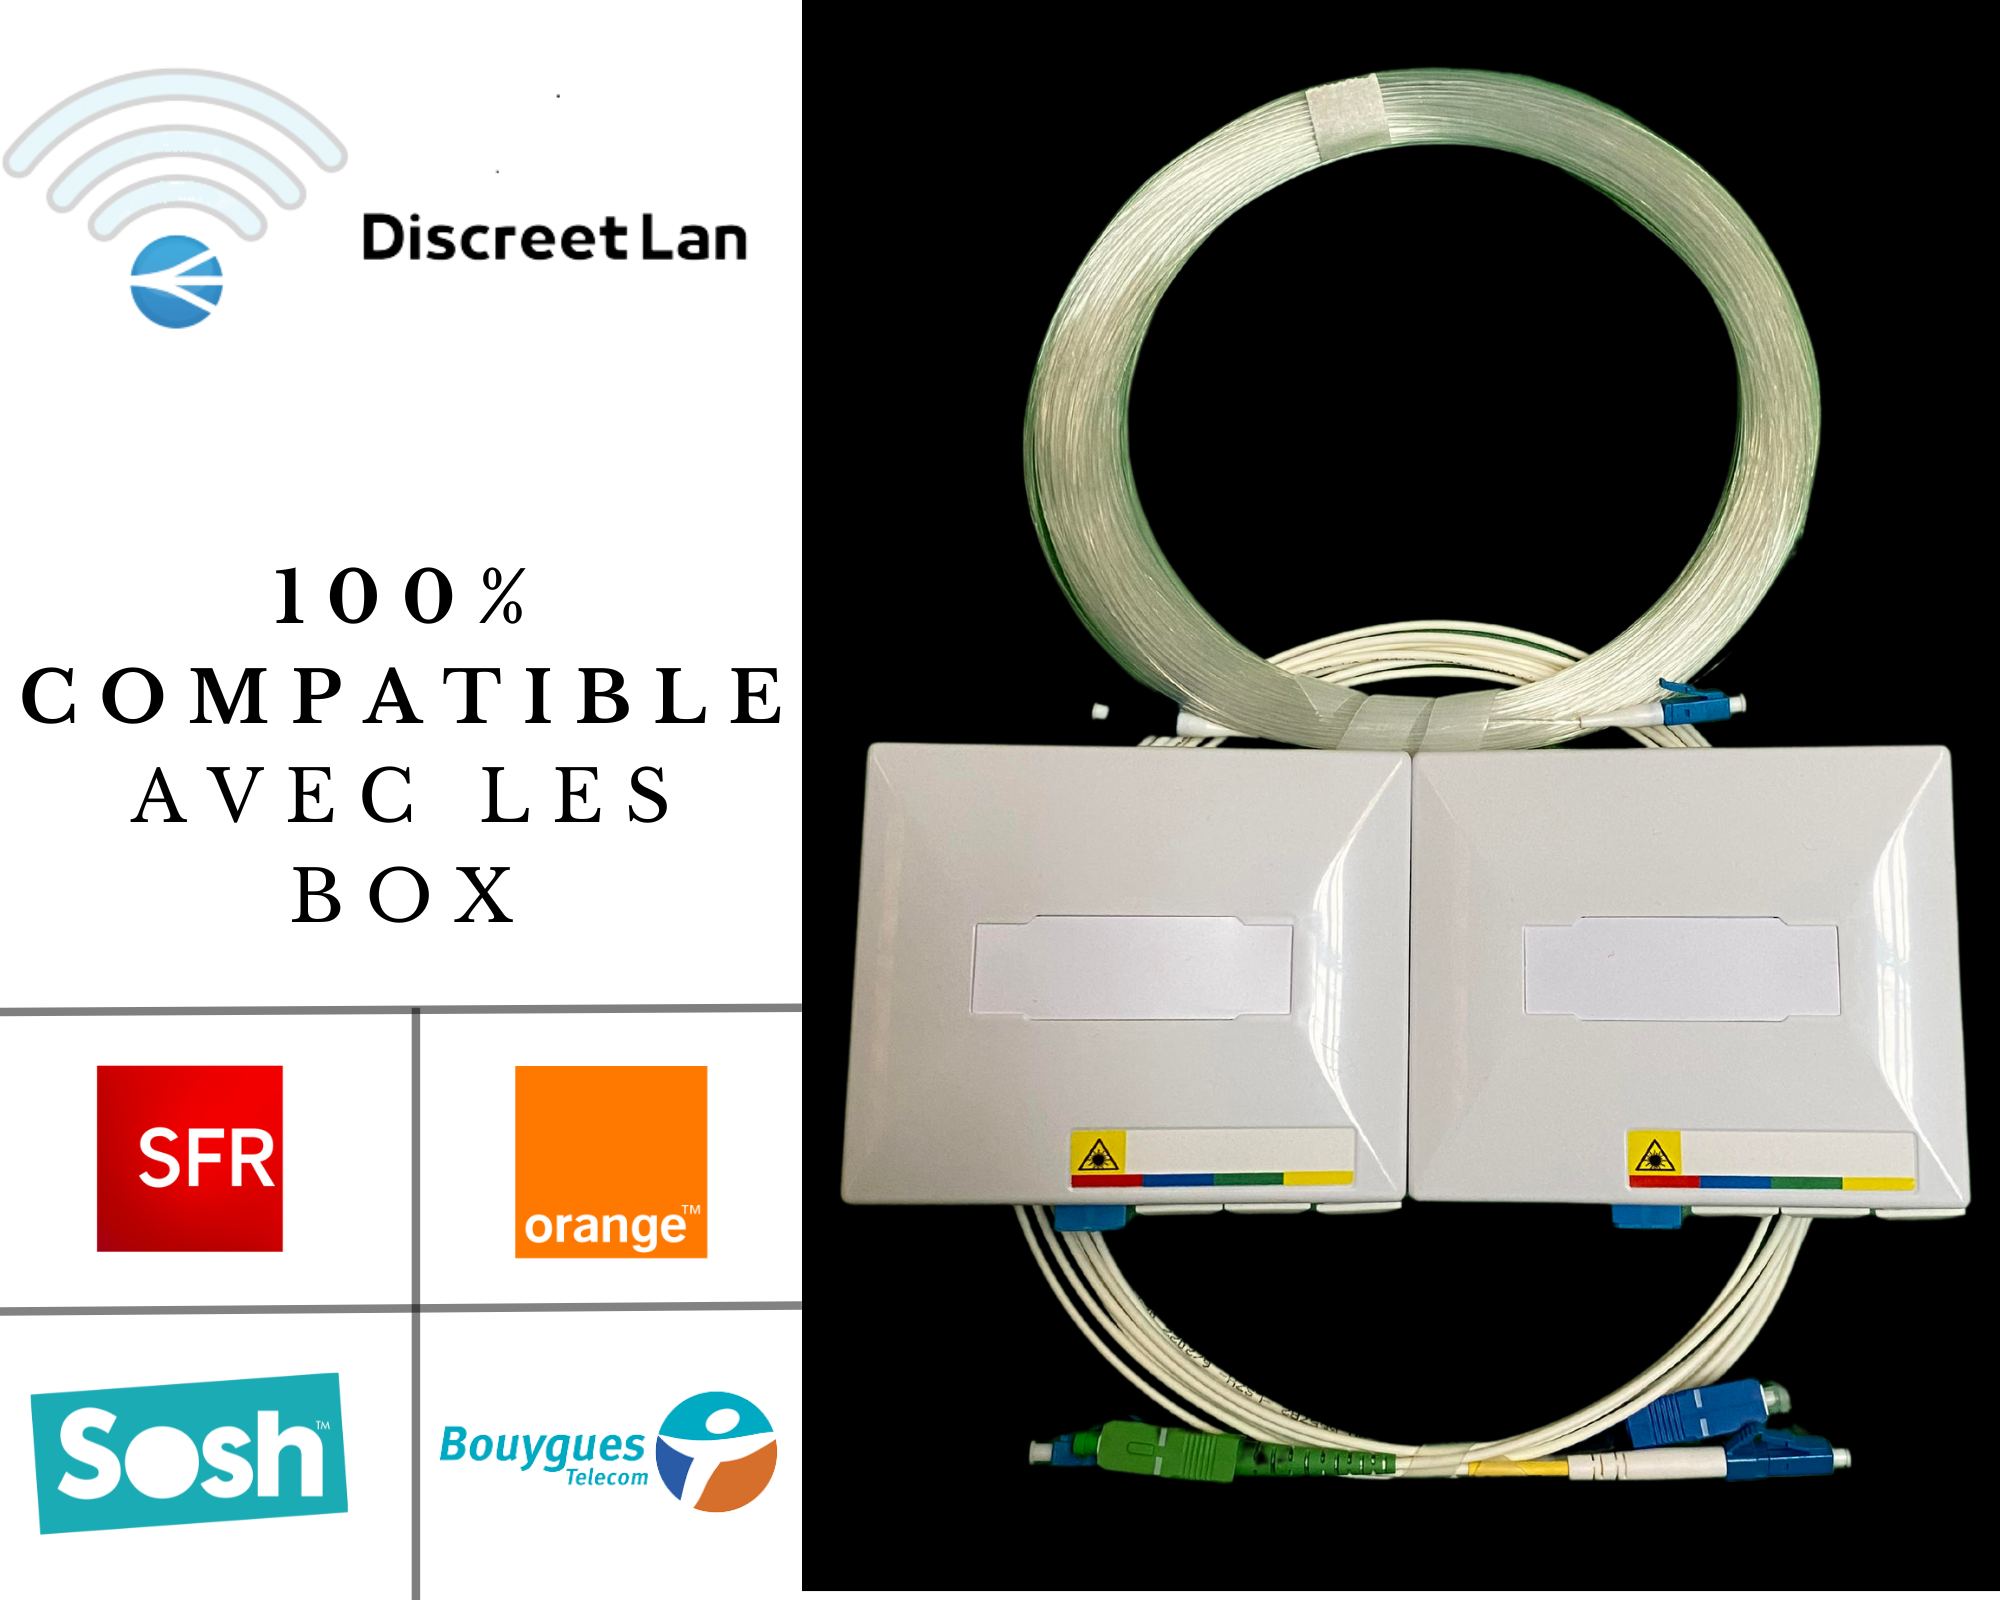 kit complet 40 M Discreet Lan déplacement box orange-bouygues - sfr